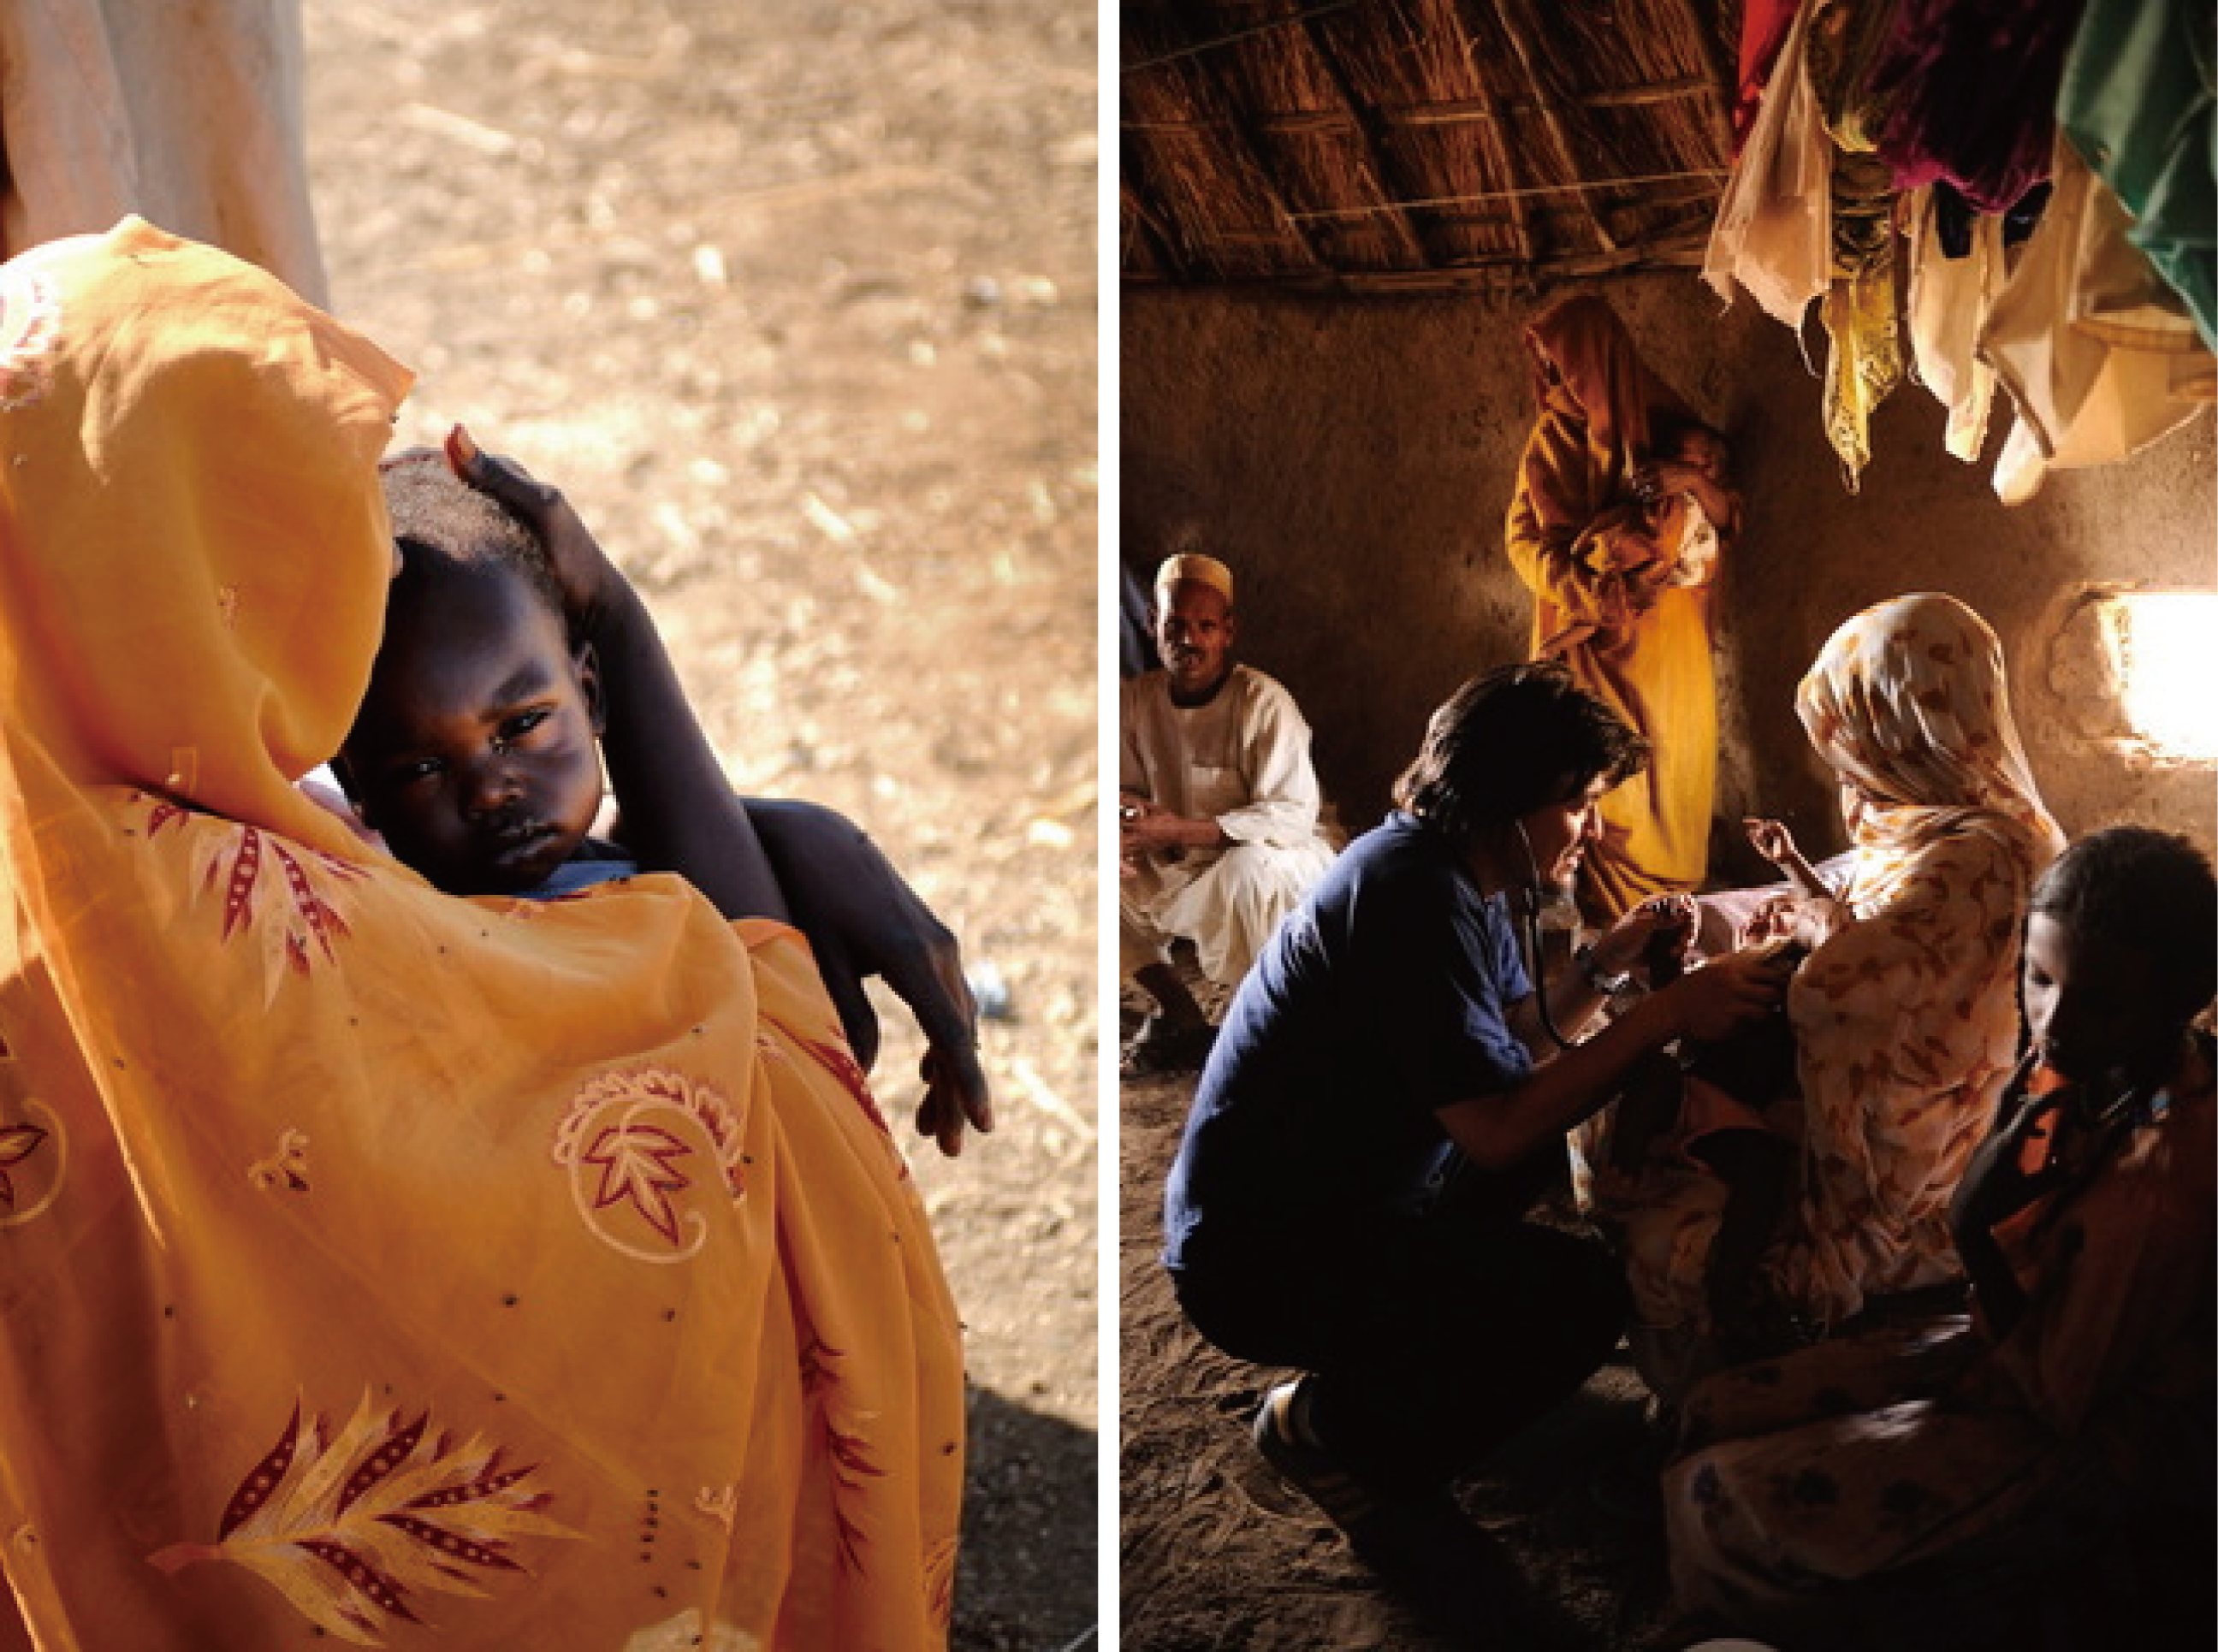 アフリカに医療や水を届ける国際ngoロシナンテス 内藤順司さん写真展のお知らせ｜特定非営利活動法人ロシナンテス